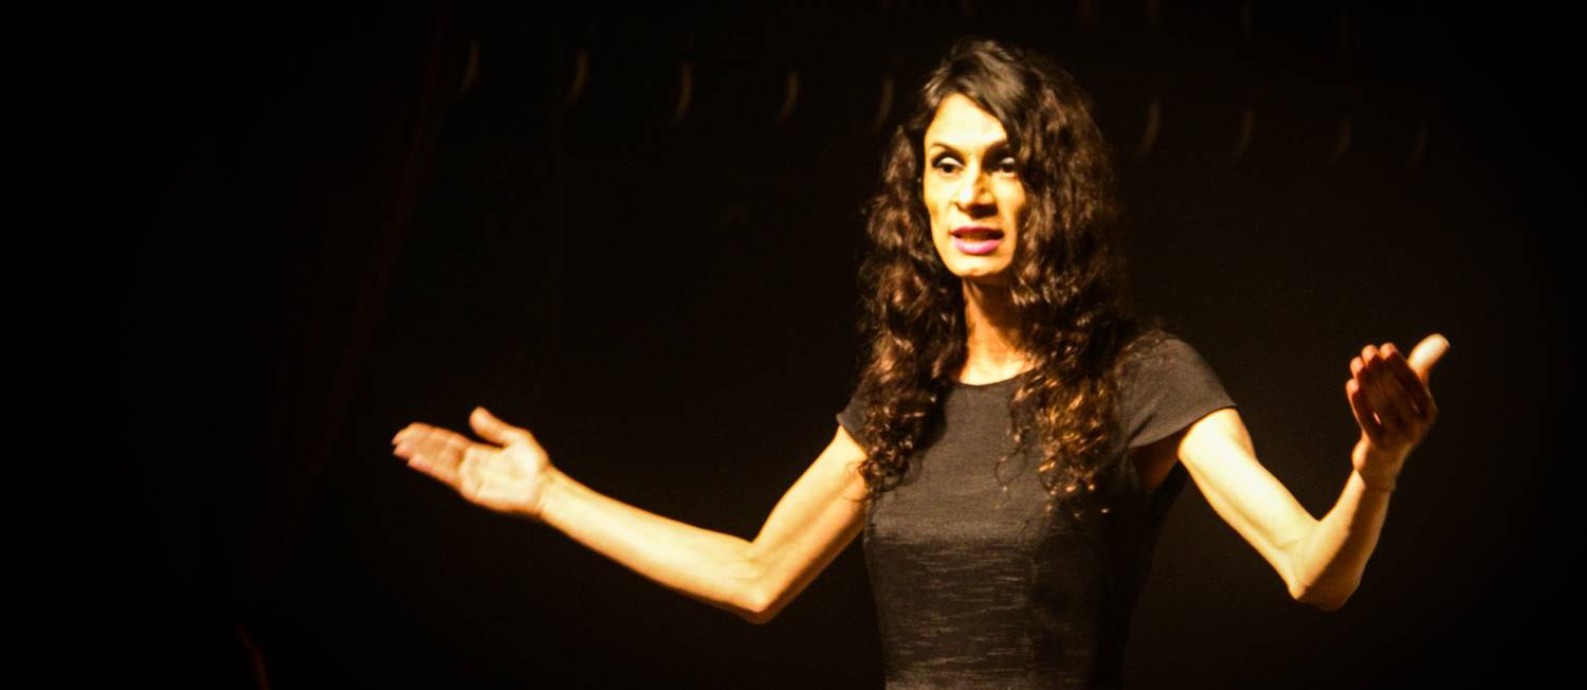 Renata Carvalho na peça "O Evangelho segundo Jesus, Rainha do Céu" Foto: Luciana Pires Ferreira / Divulgação